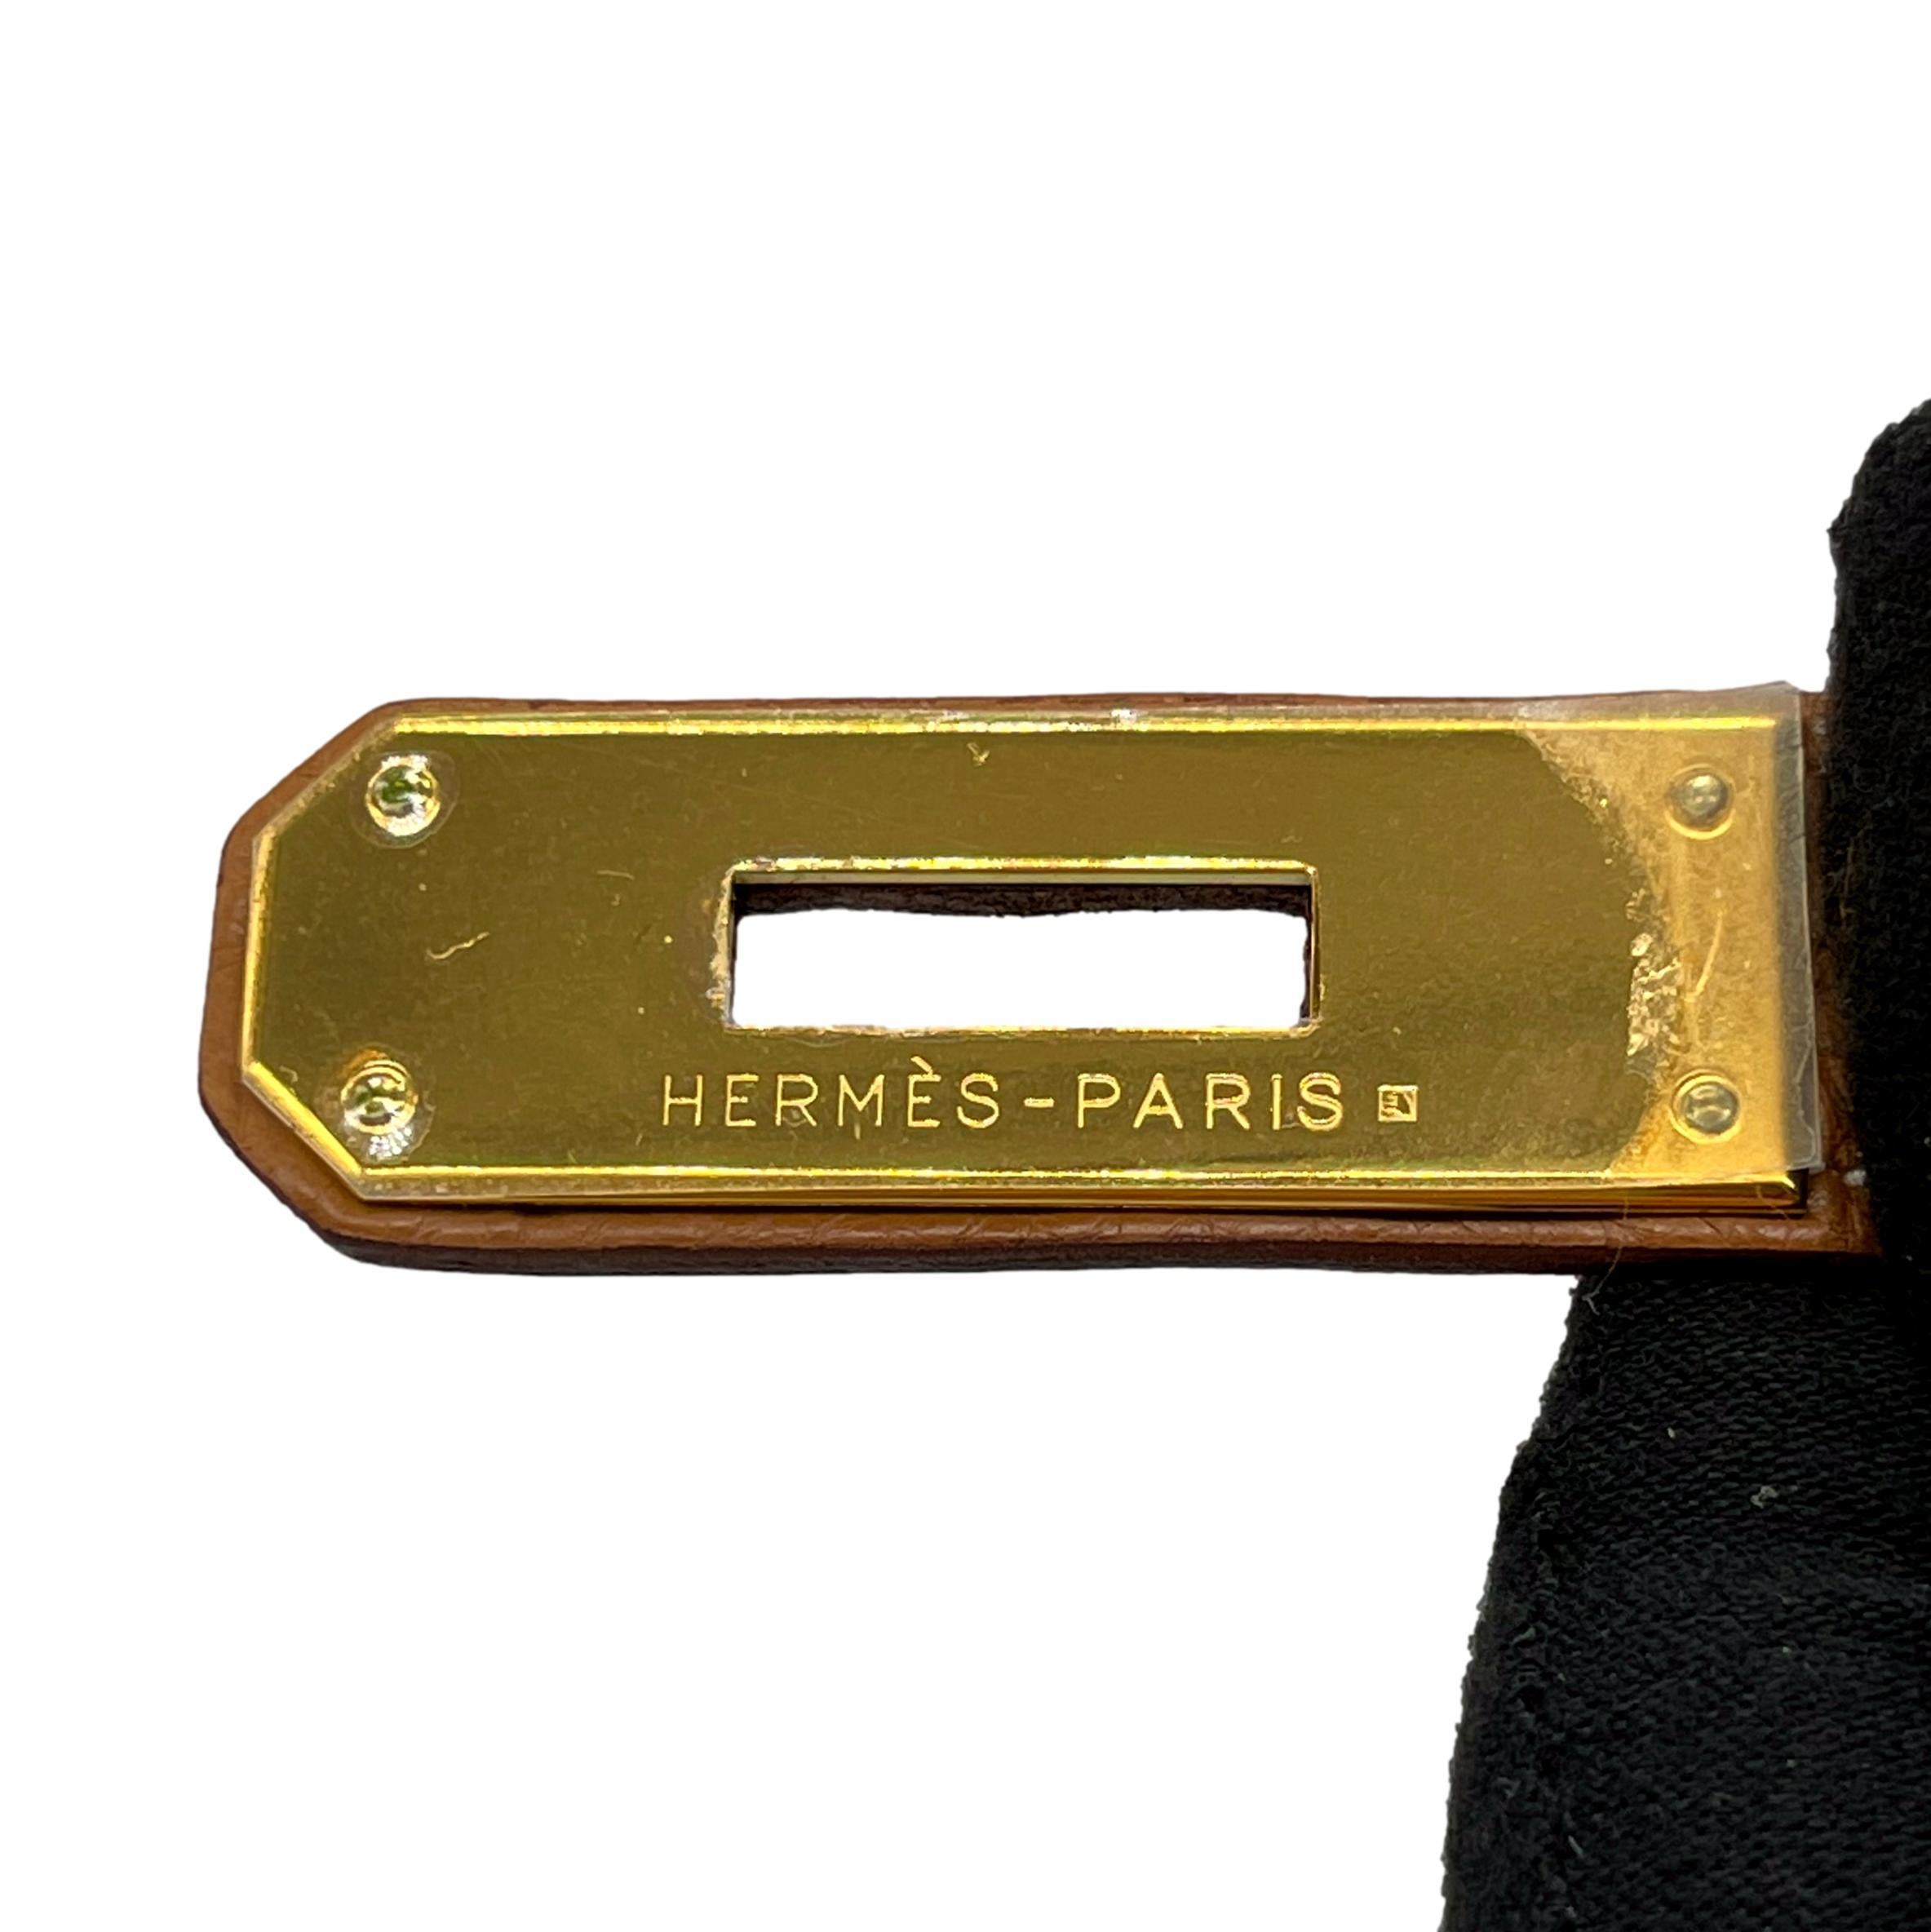 Hermès - Sac à main Kelly Retourne Natural Clemence avec quincaillerie dorée 32 cm, 2007. 14